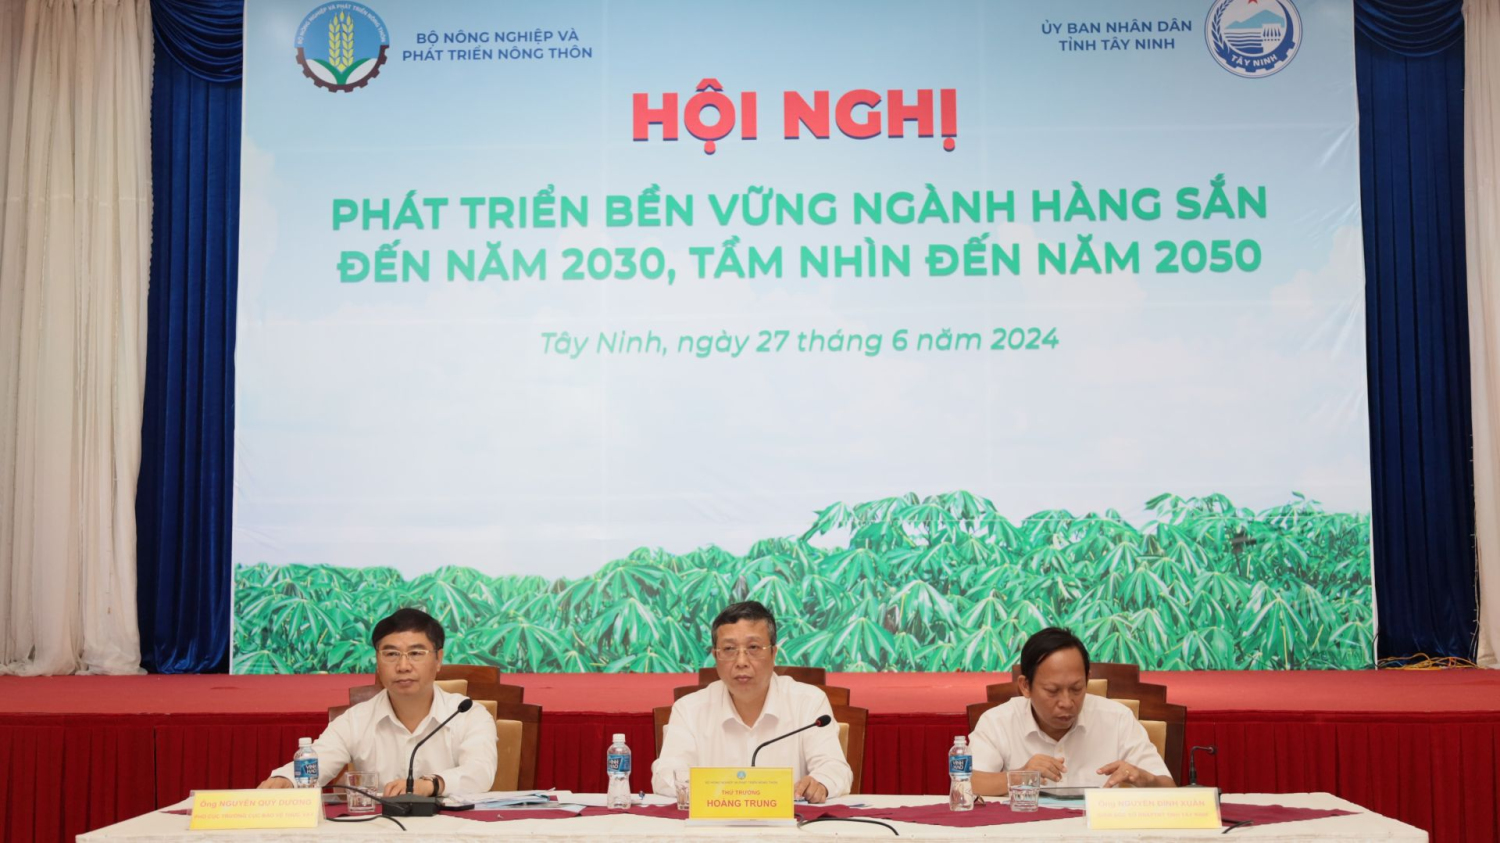 Thứ trưởng Bộ NN&PTNT Hoàng Trung (ngồi giữa), ông Nguyễn Quý Dương - Phó Cục trưởng Cục Bảo vệ thực vật (bên trái), ông Nguyễn Đình Xuân – Giám đốc Sở NN&PTNT Tây Ninh (bên phải) đồng chủ trì buổi thảo luận tại hội nghị.